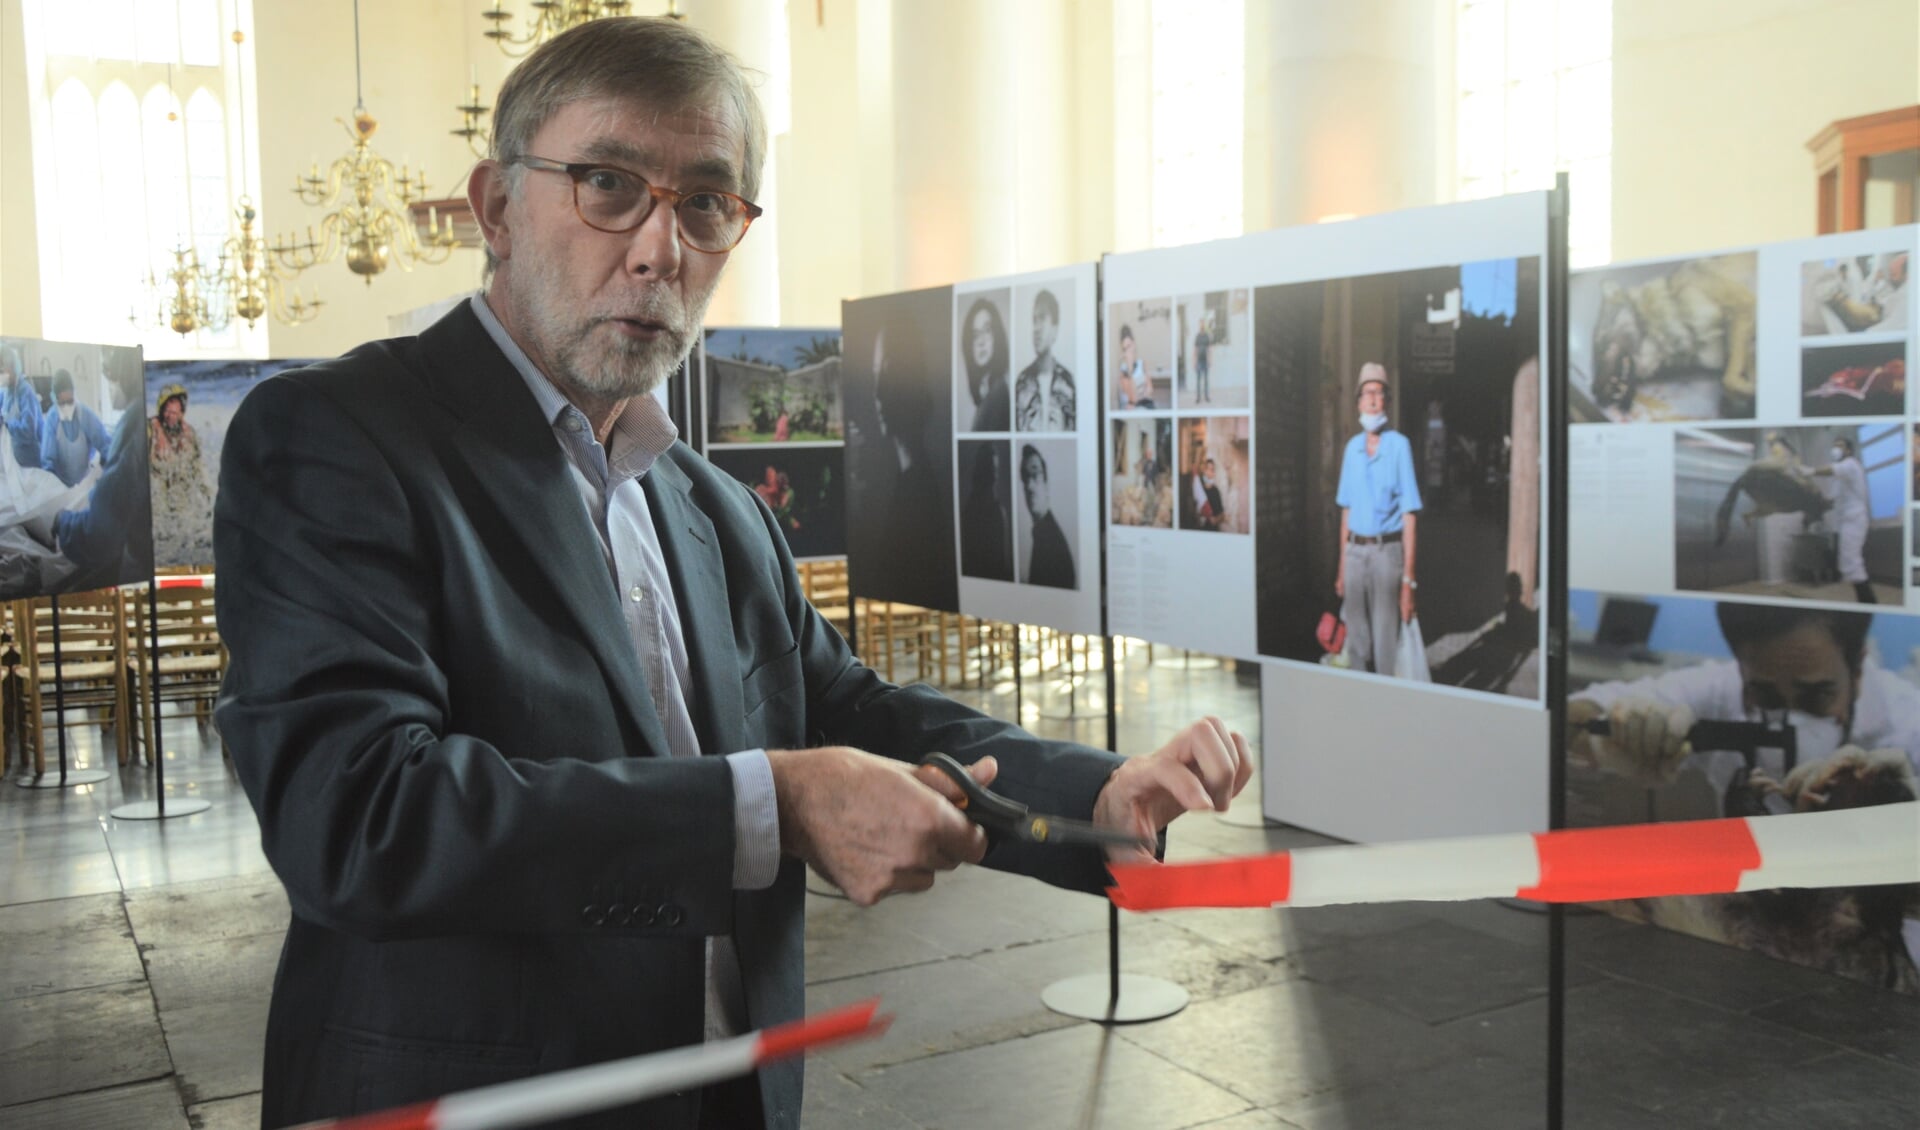 Met het doorknippen van het lint opent Werner Rauwerdink, secretaris van stichting Zilveren Camera de reizen de expositie in de Burghtkerk.